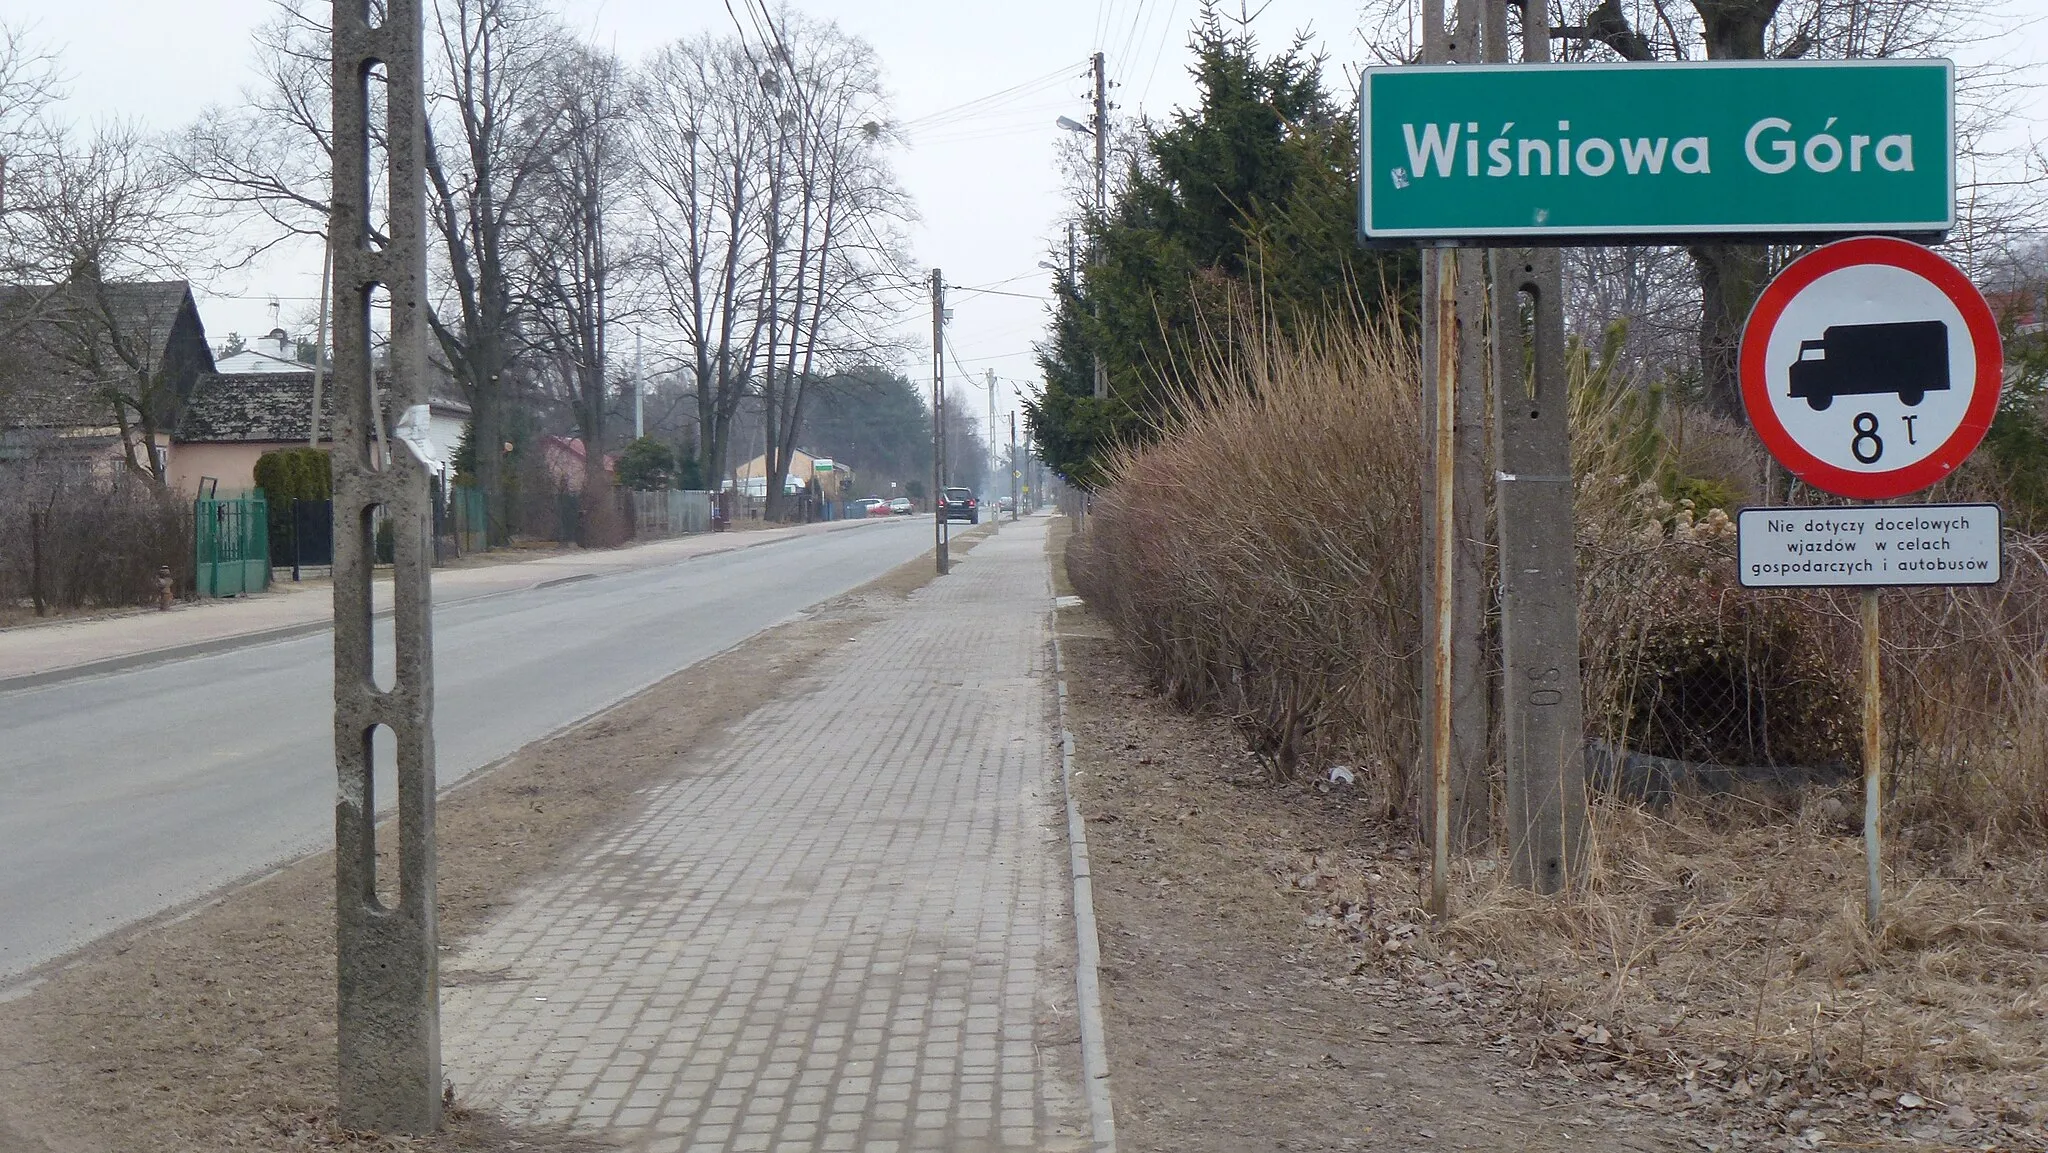 Photo showing: Wjazd do miejscowości Wiśniowa Góra